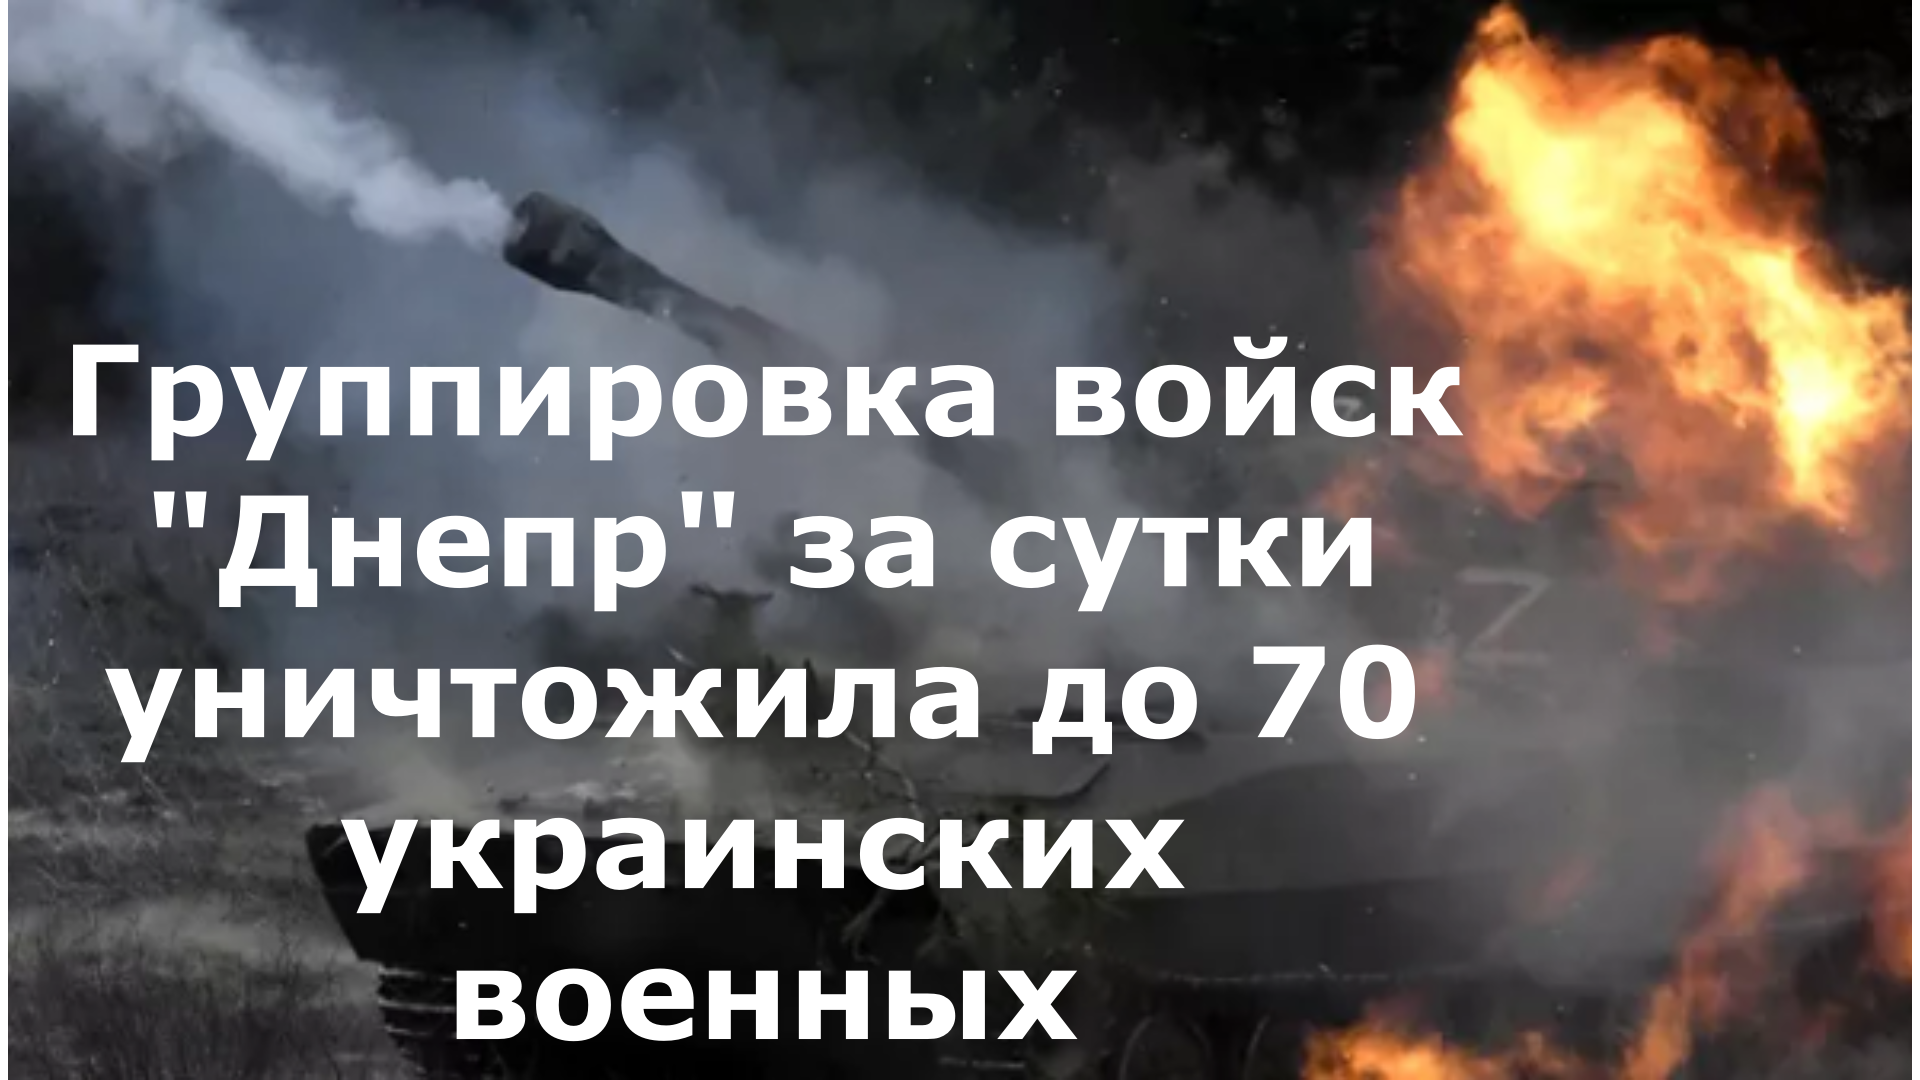 Группировка войск "Днепр" за сутки уничтожила до 70 украинских военных